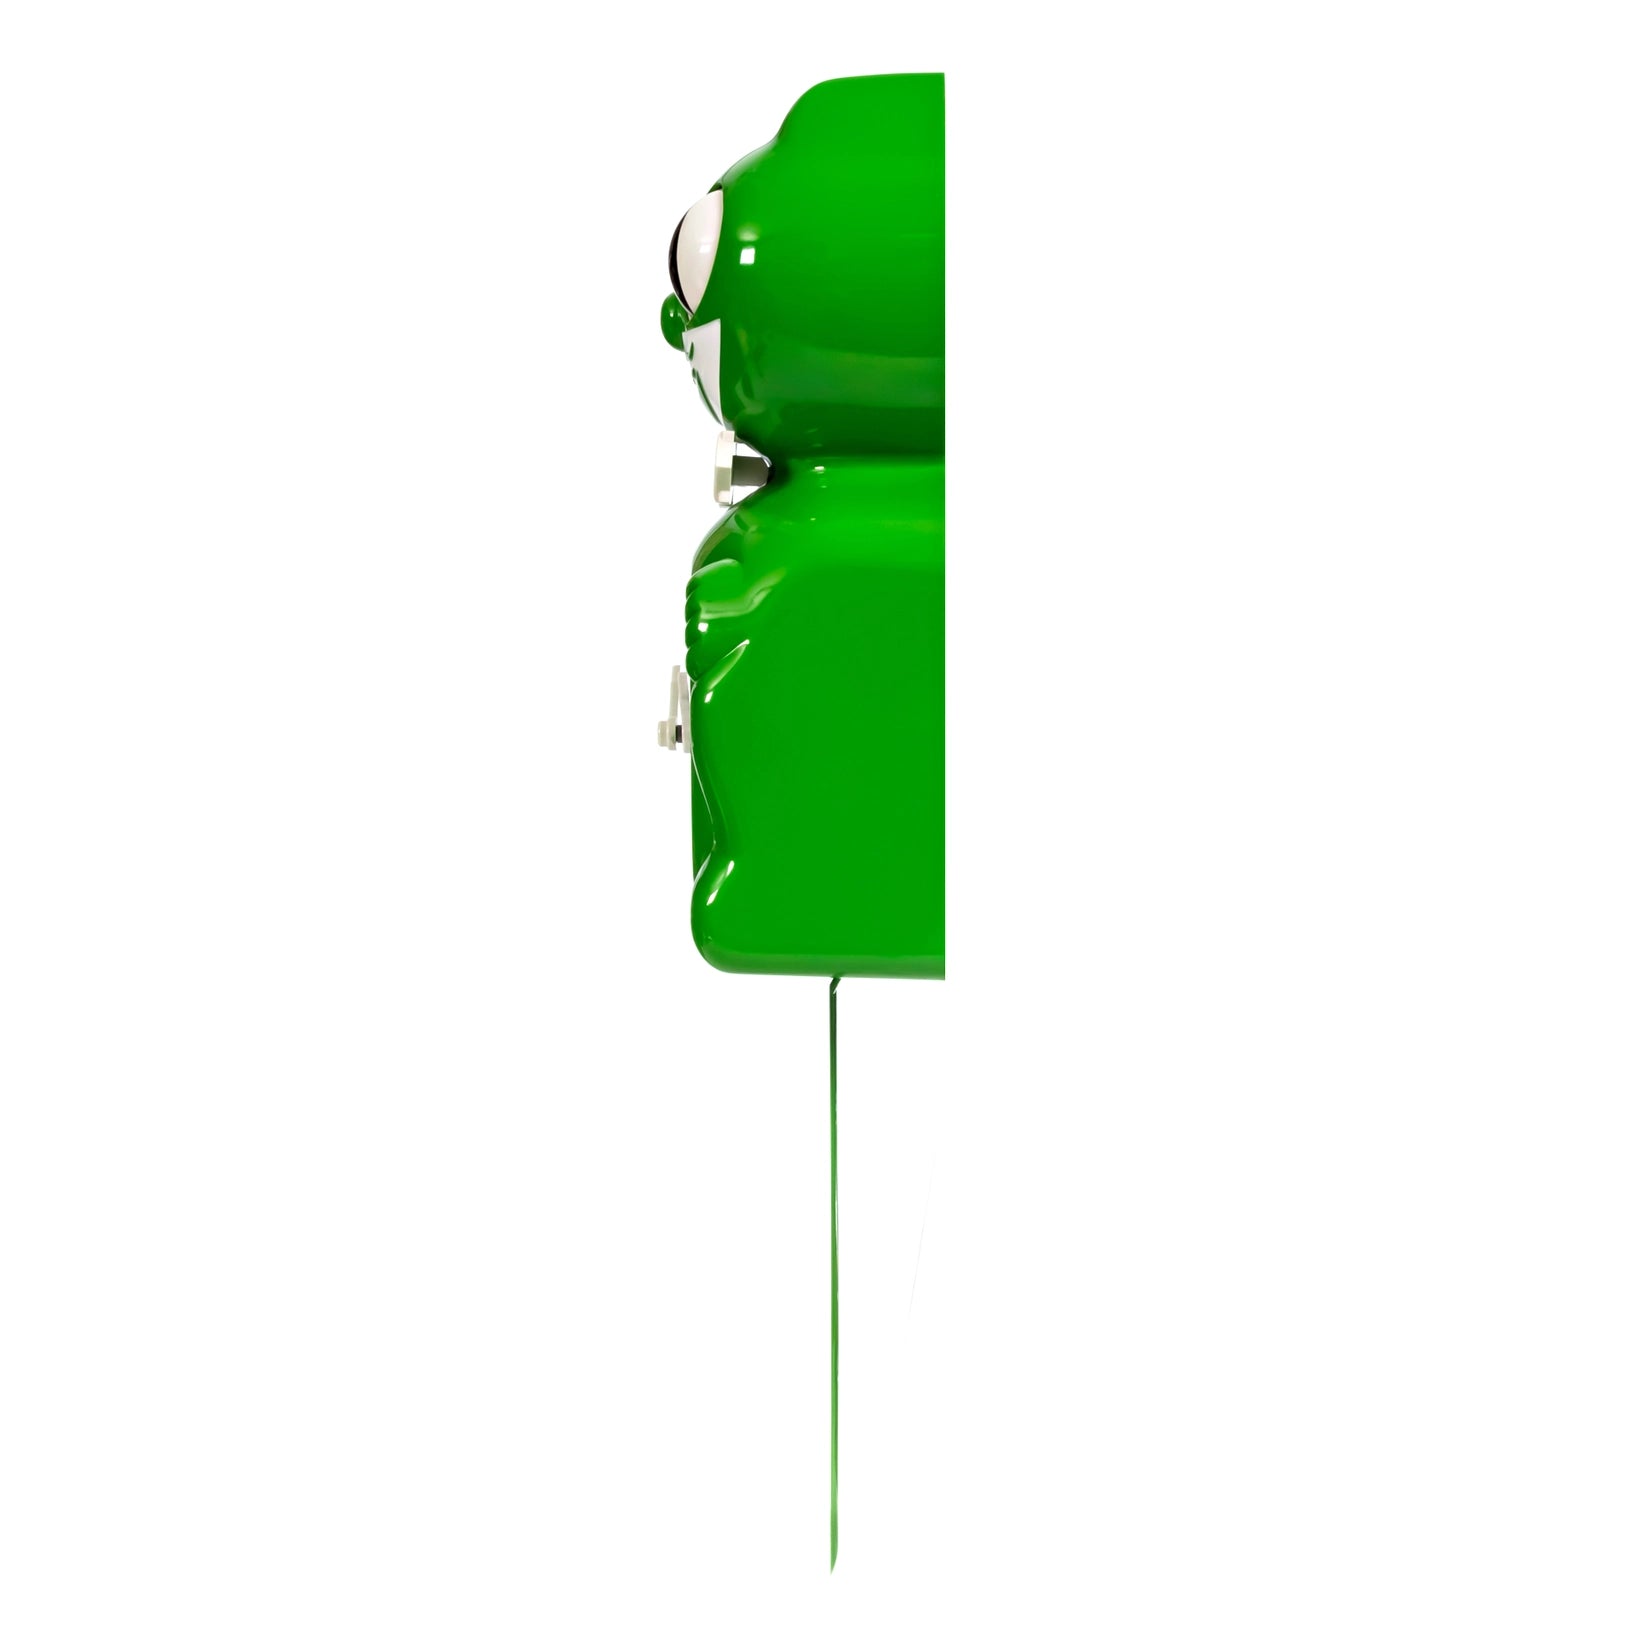 Kit Cat Klock - classic Green